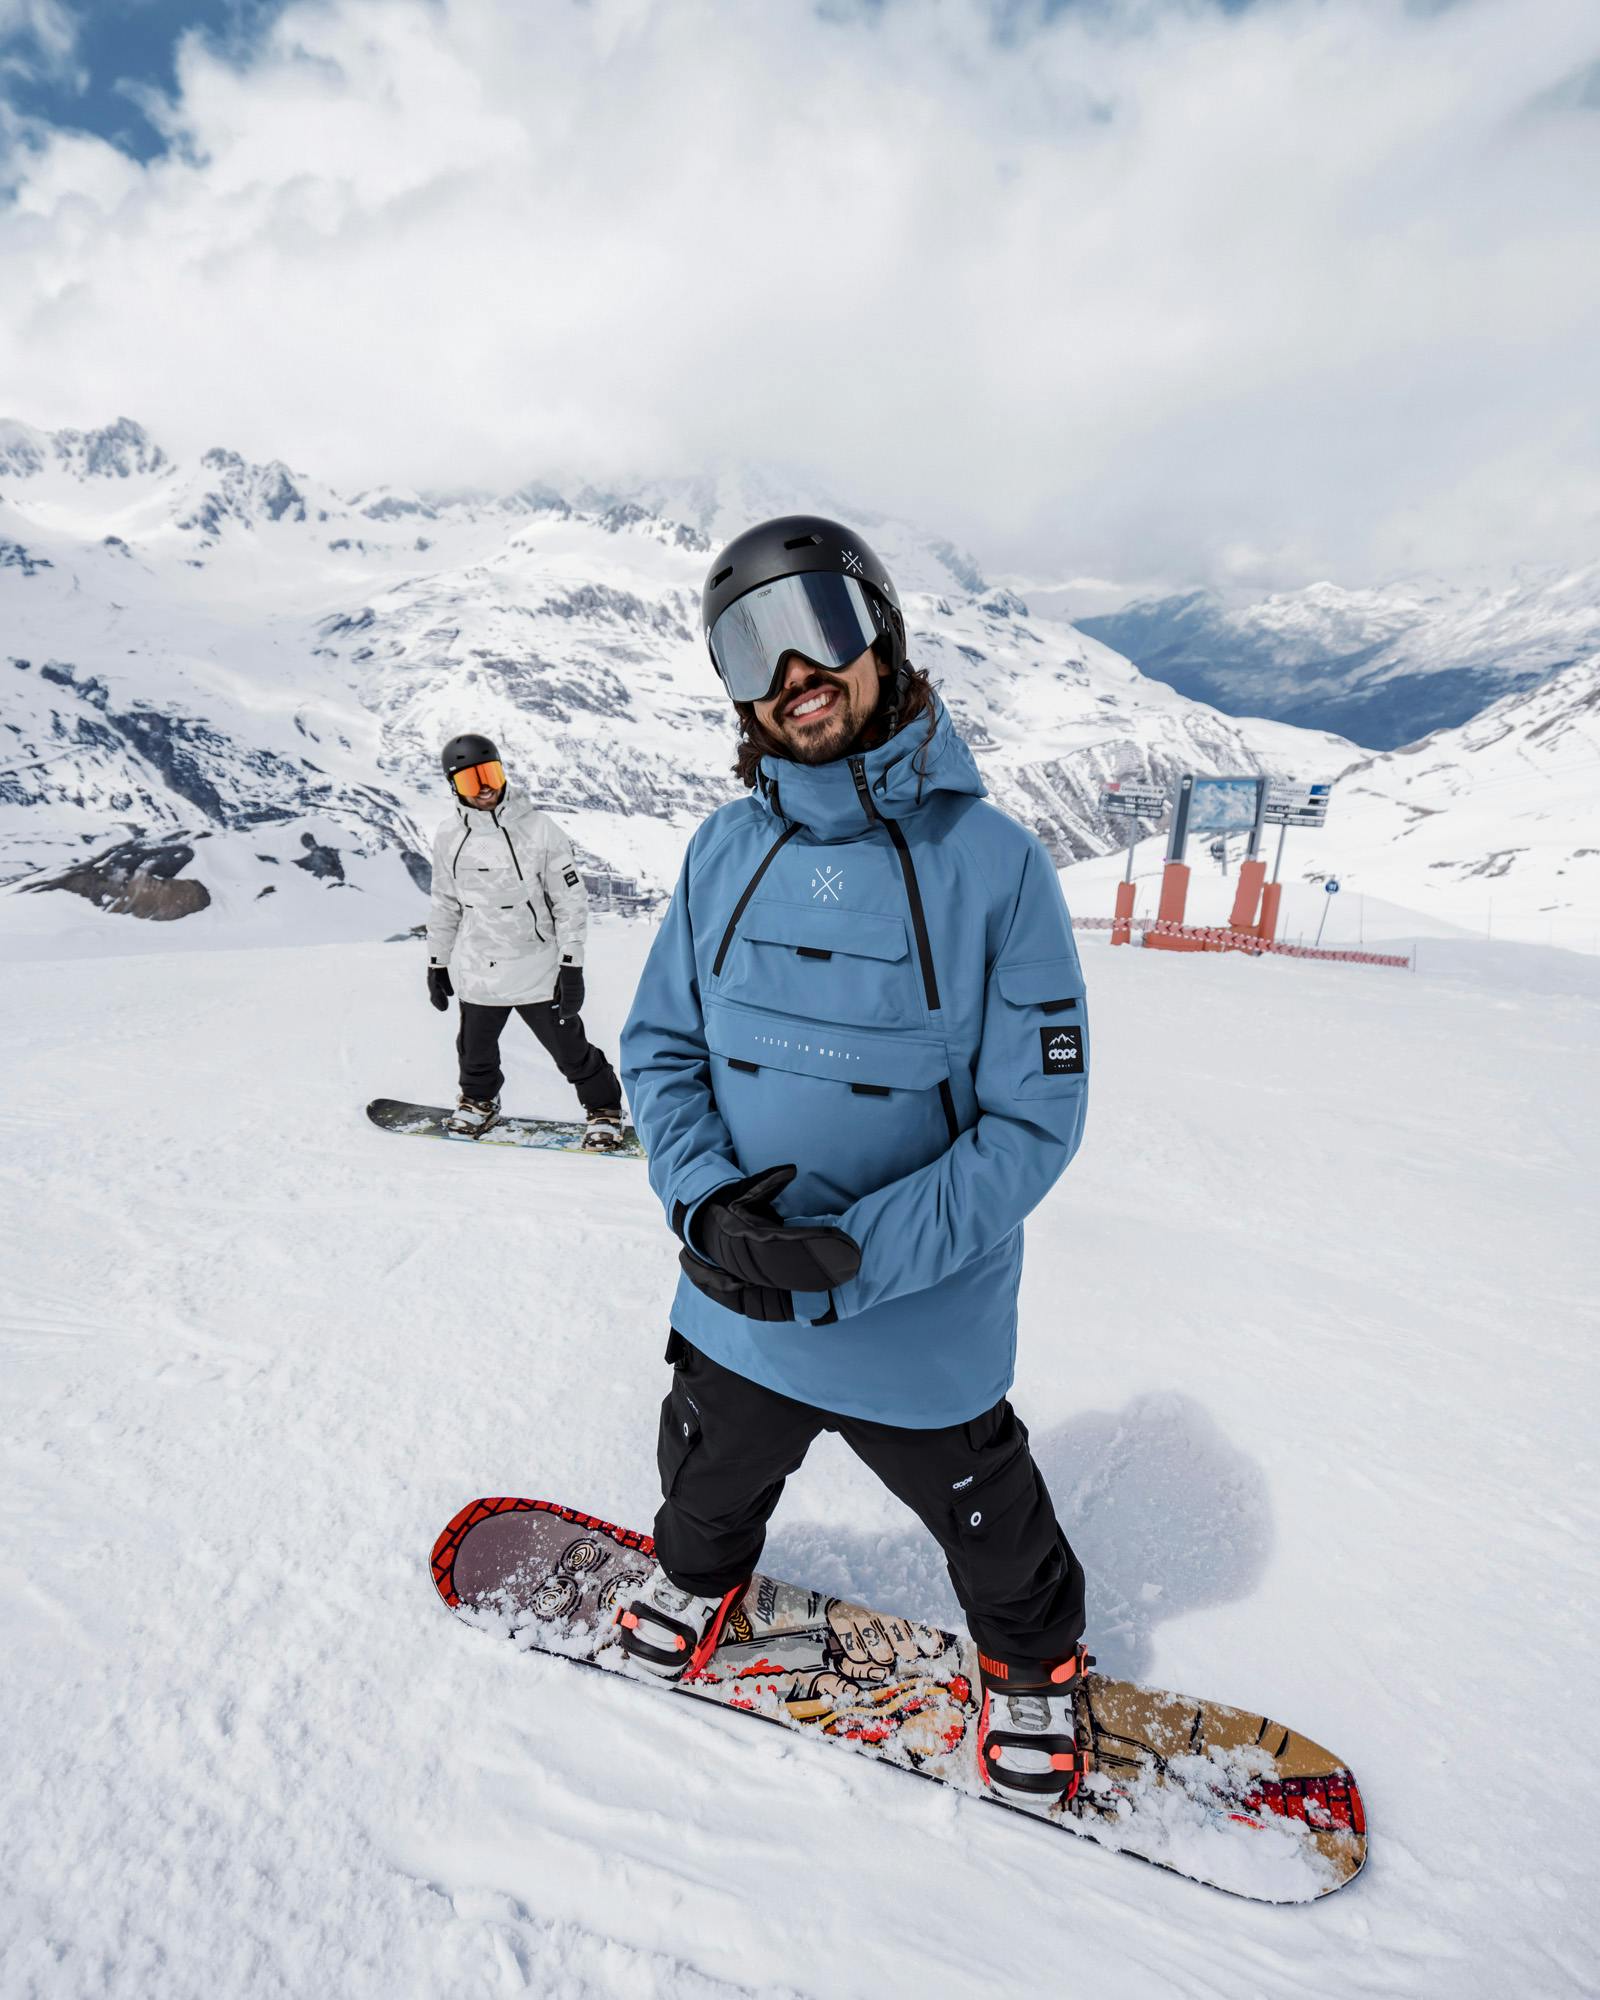 Leren Snowboarden: 18 Tips Voor Beginners | Dope Magazine